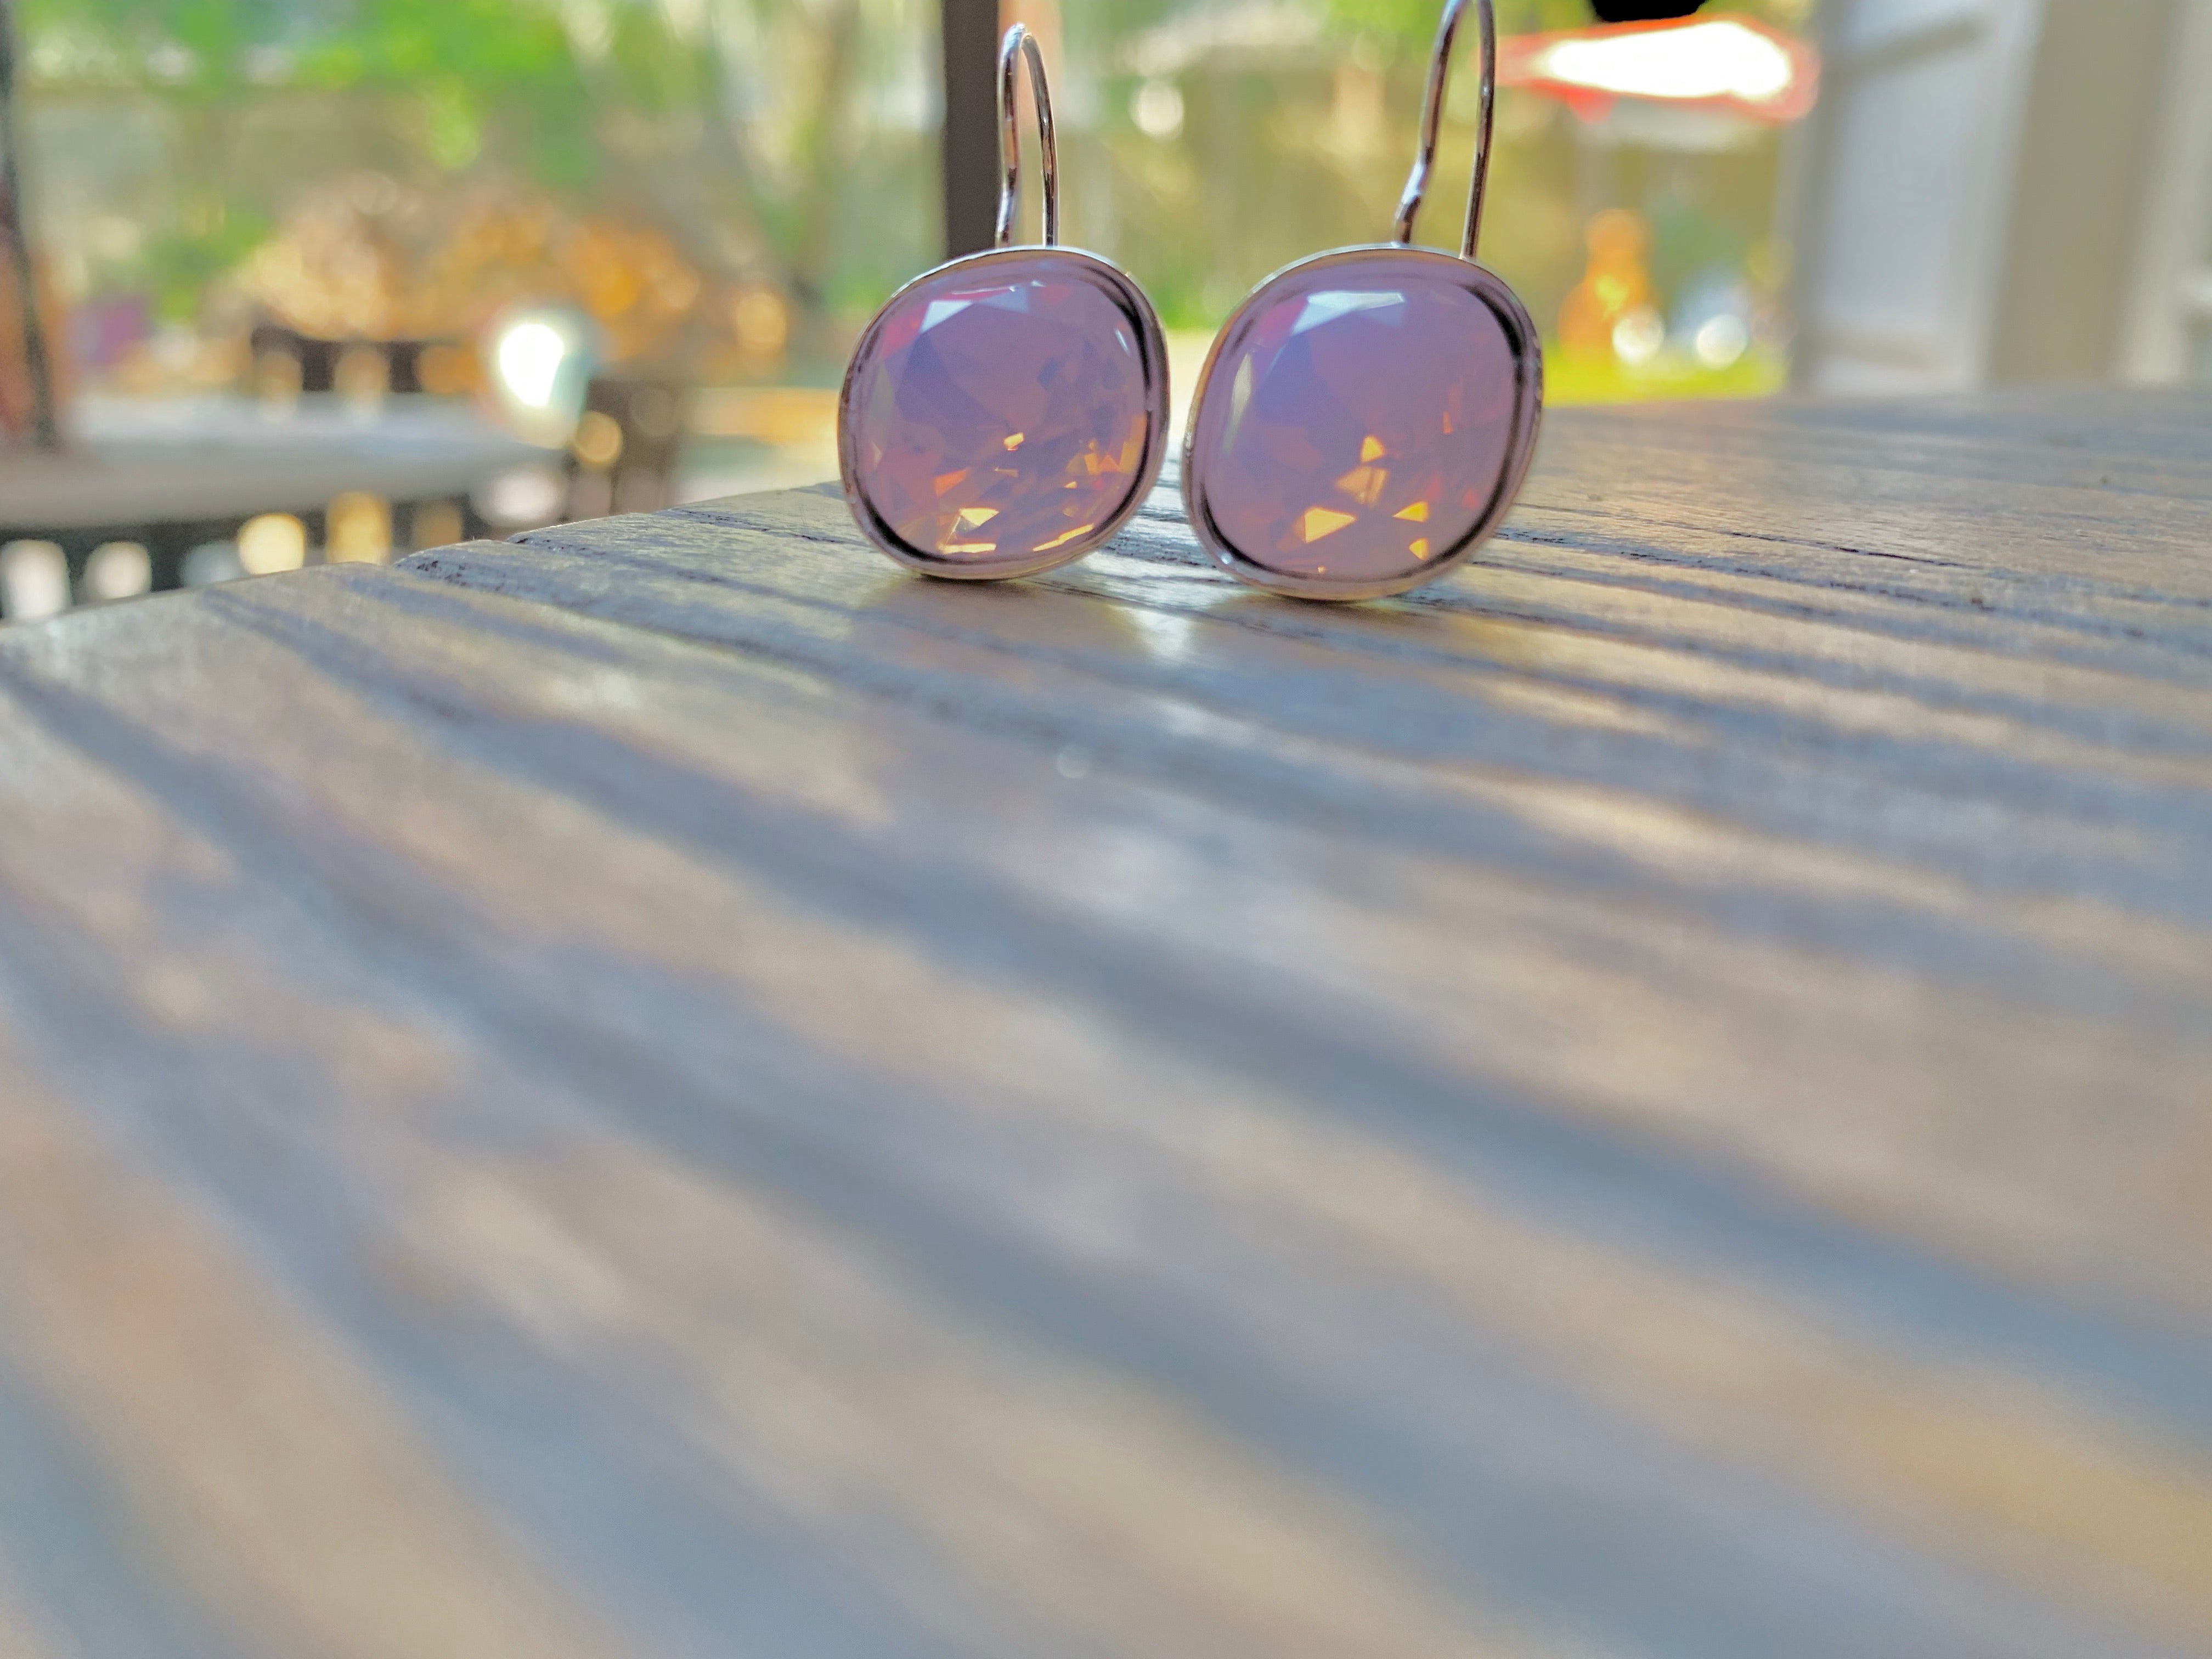 Handmade Rose Opal Swarovski Earrings in Silver,Earrings - Dirt Road Divas Boutique